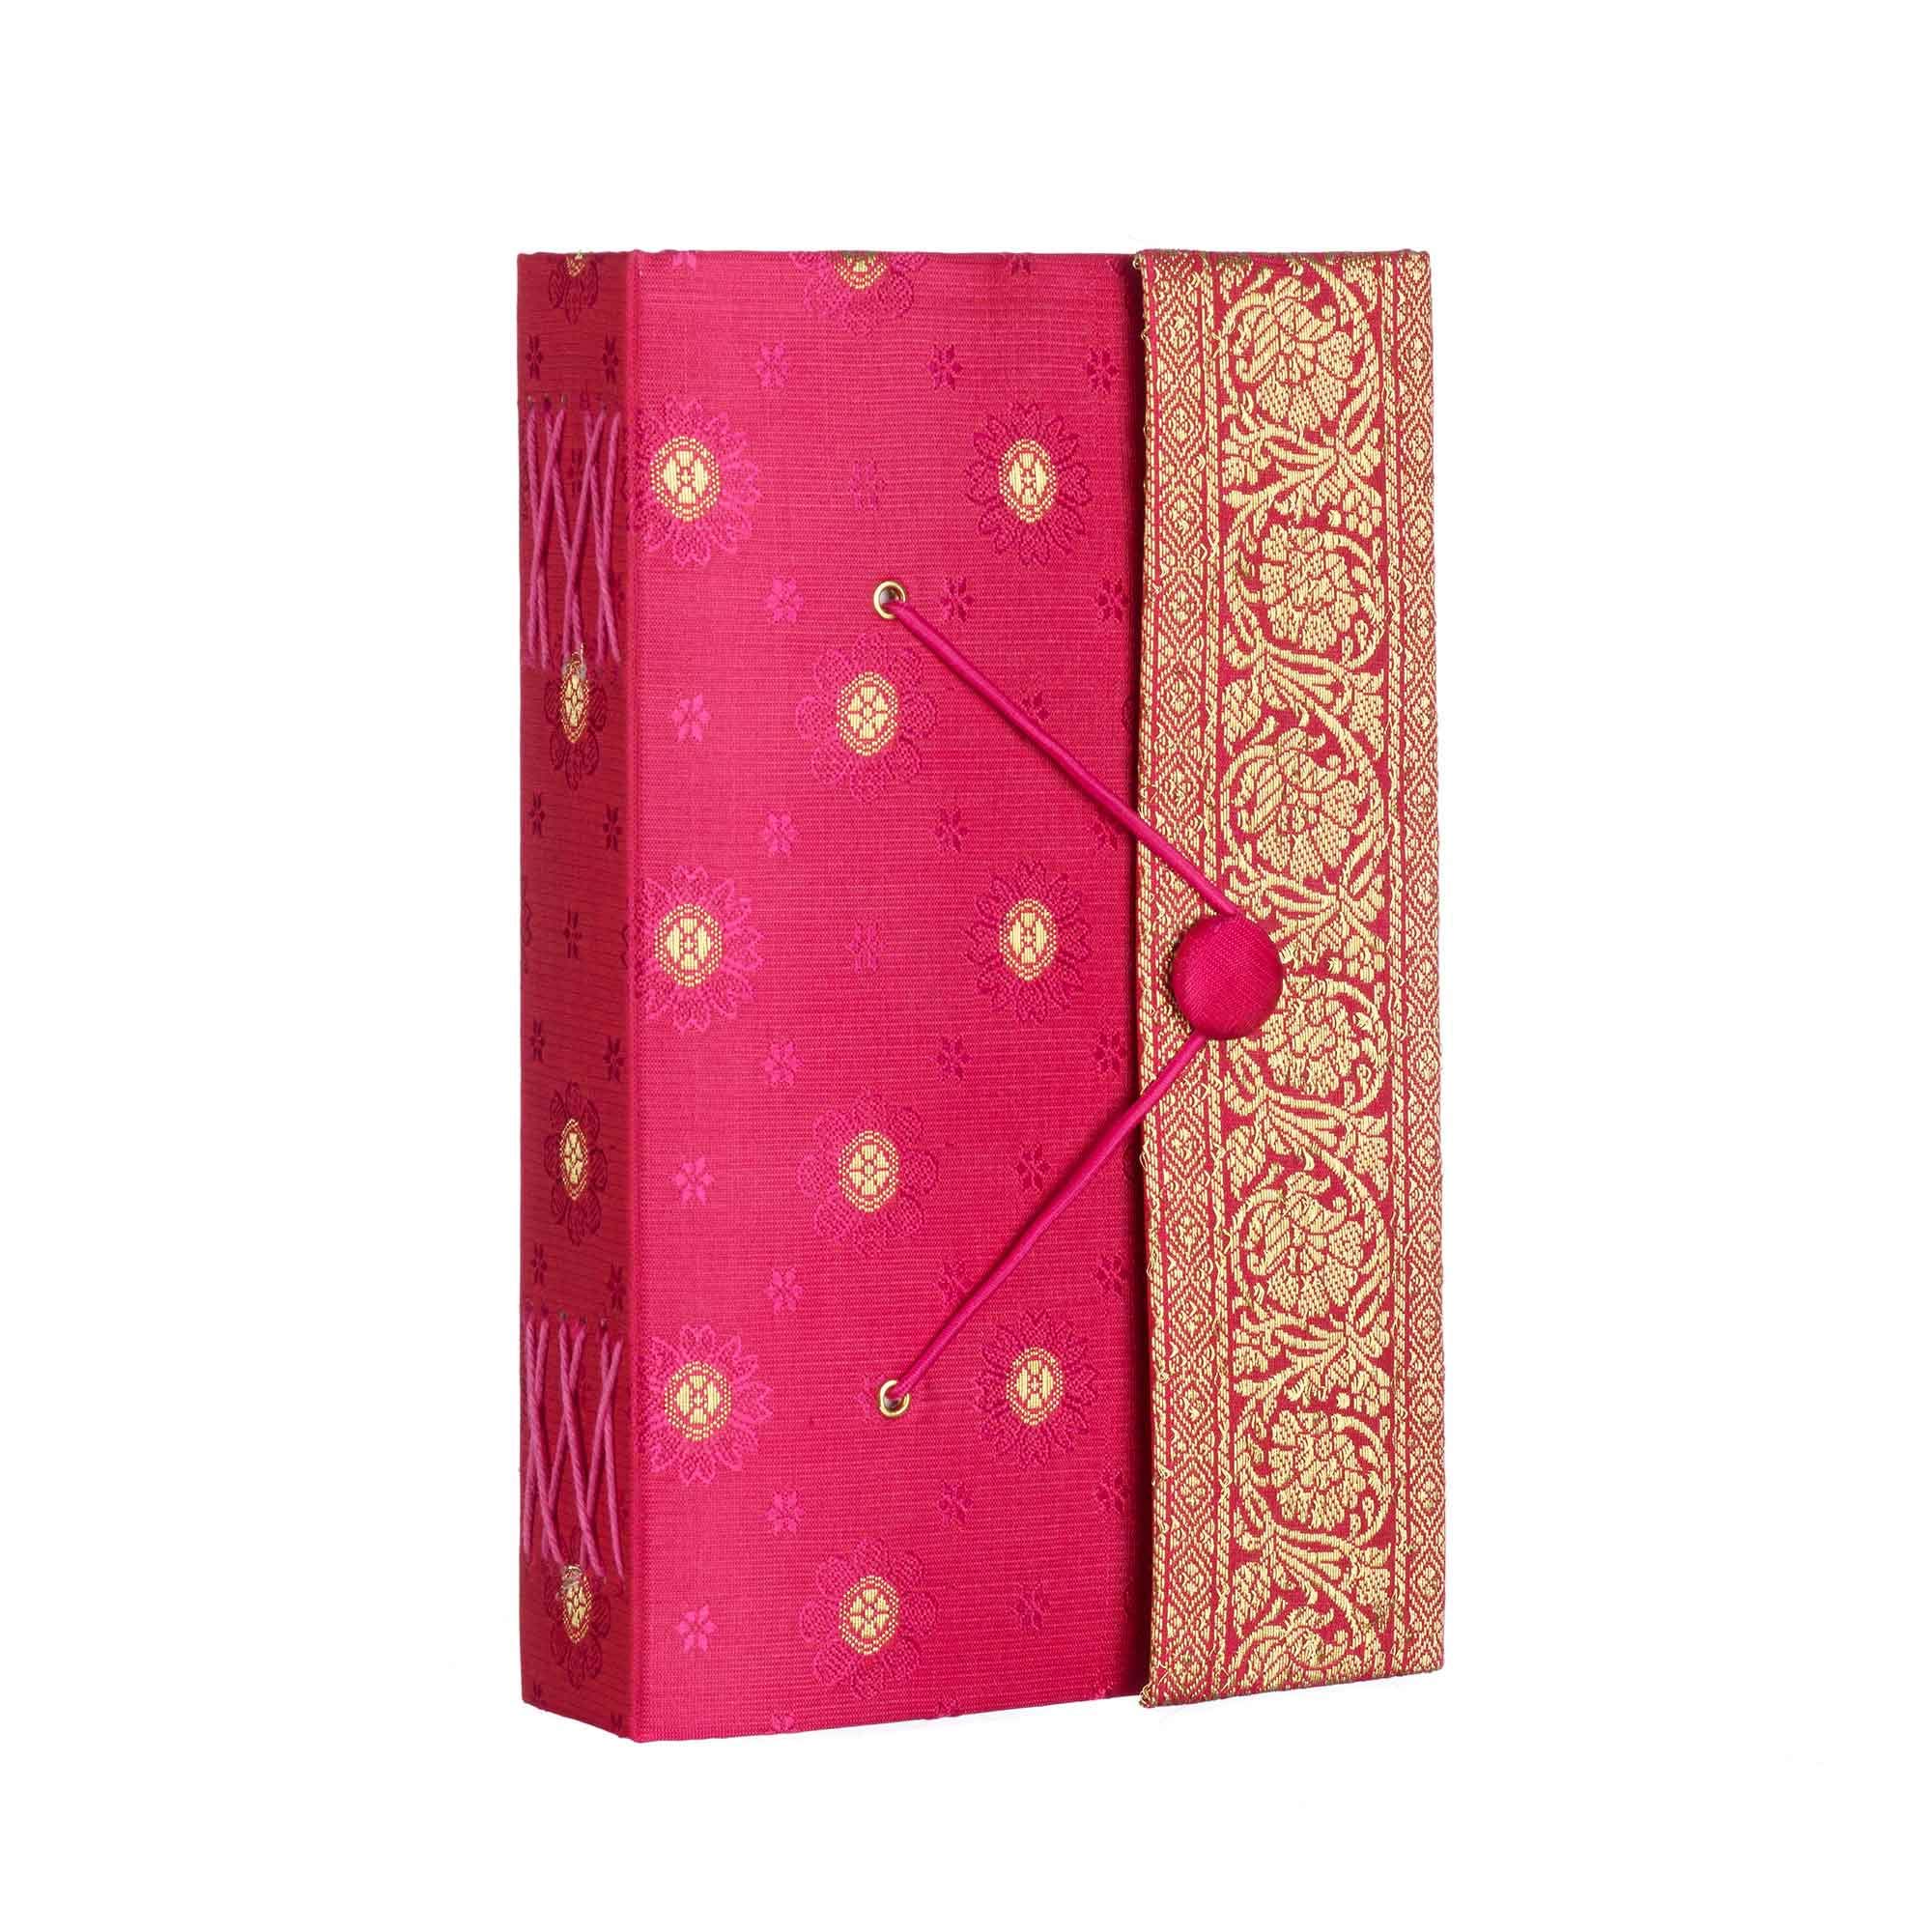 Handgefertigtes Cerise Sari-Tagebuch – buntes Stoff-Tagebuch – handgebundenes Notizbuch oder Tagebuch – Geschenk für Schriftsteller – Notizbuch aus recyceltem Papier